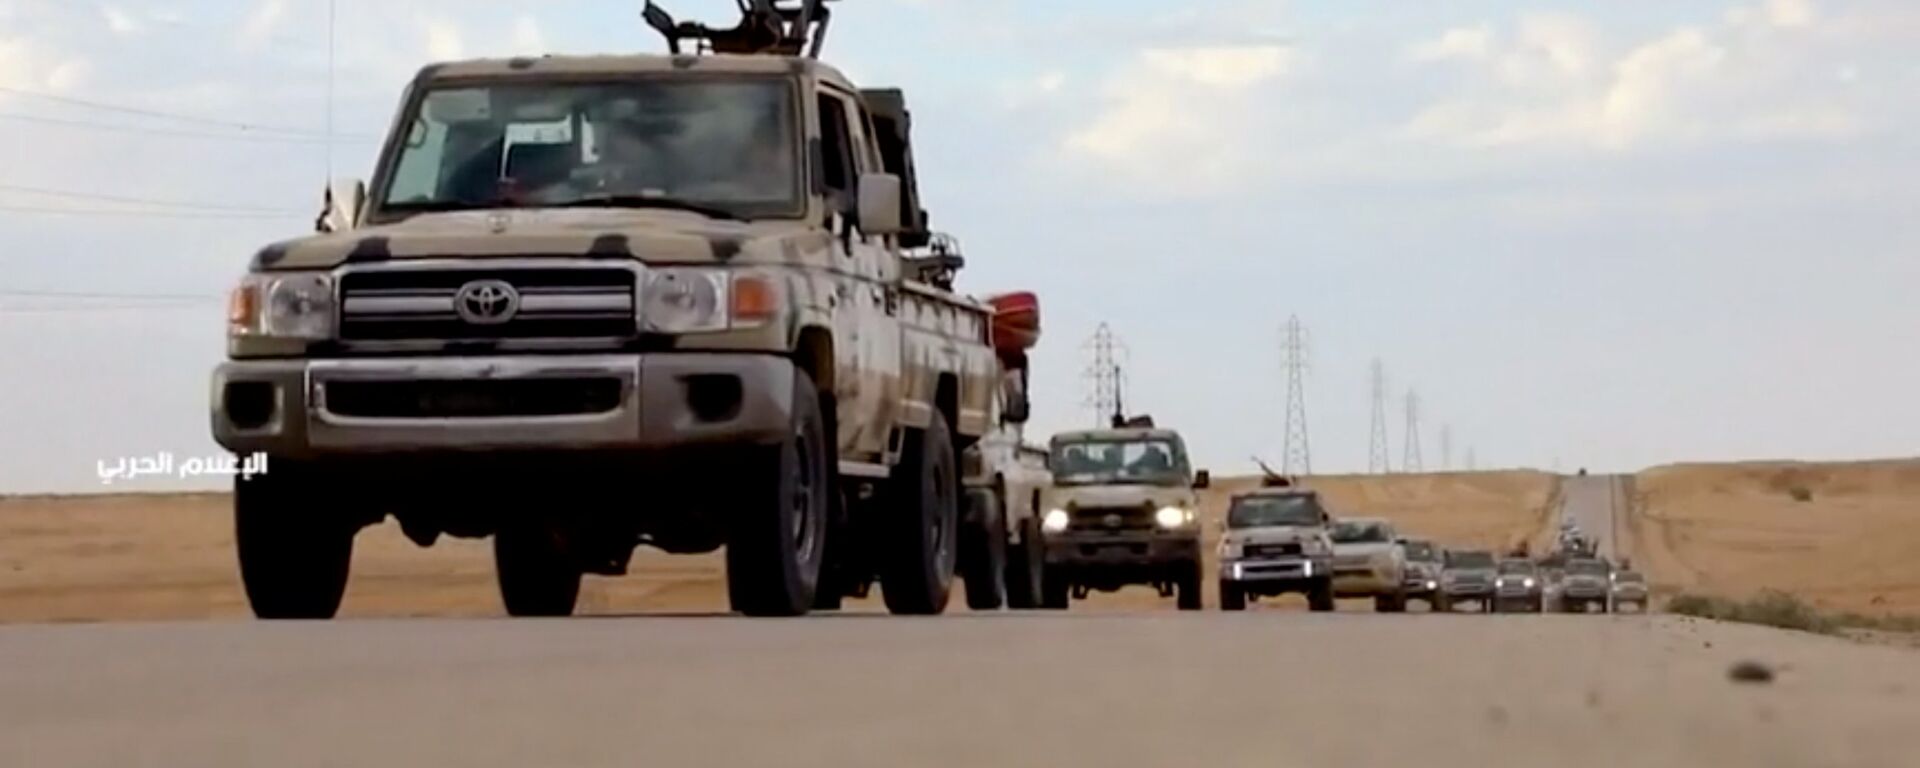 الجيش الوطني الليبي بقيادة المشير خليفة حفتر يتوجه إلى العاصمة طرابلس - سبوتنيك عربي, 1920, 06.04.2019